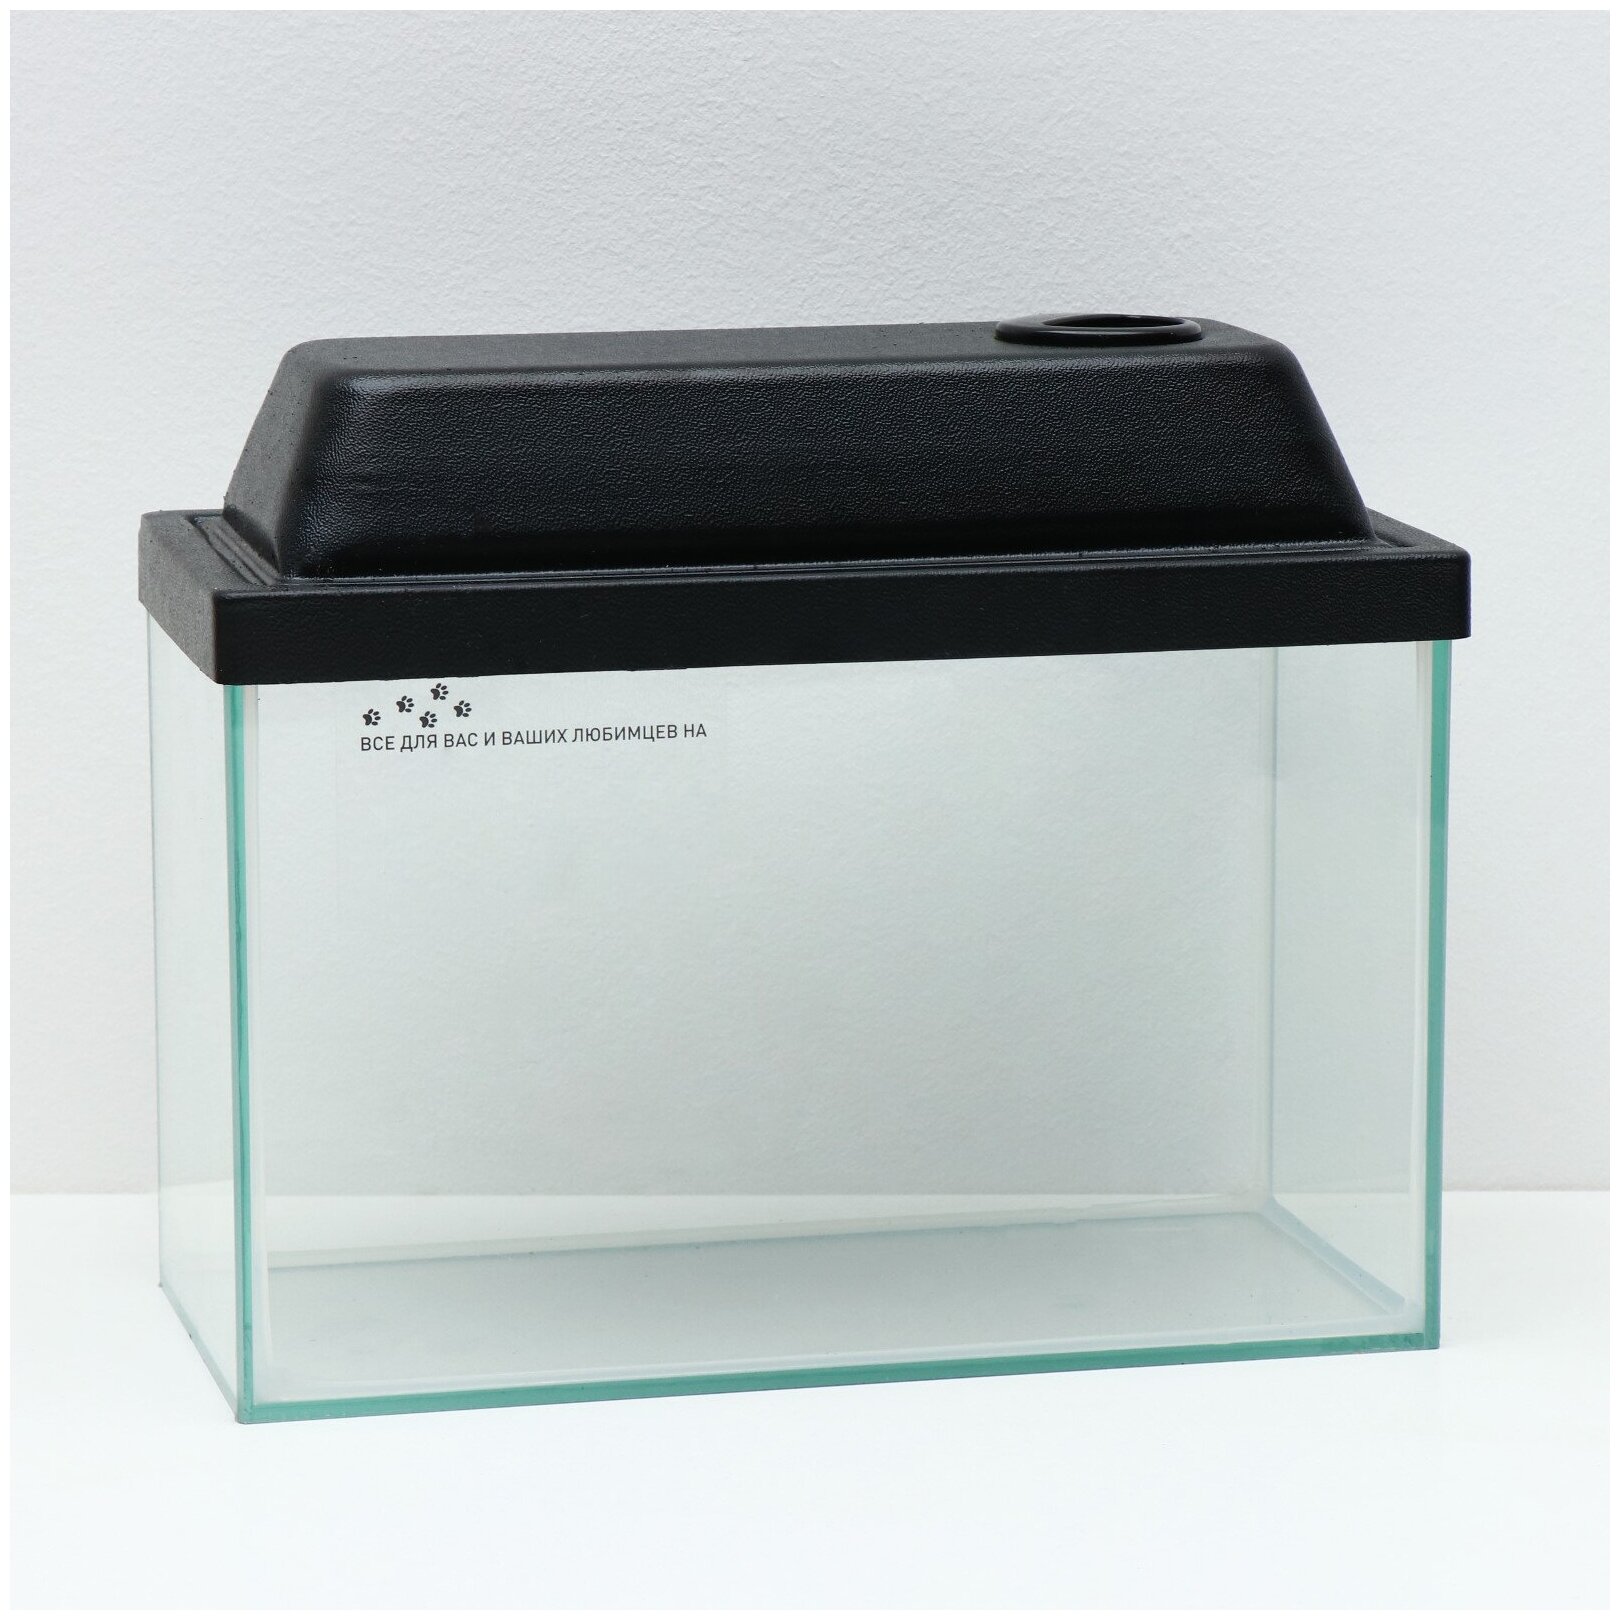 Аквариум прямоугольный прозрачный шов с крышкой, 10 литров, 32 x 15 x 21/23,5 см, чёрный